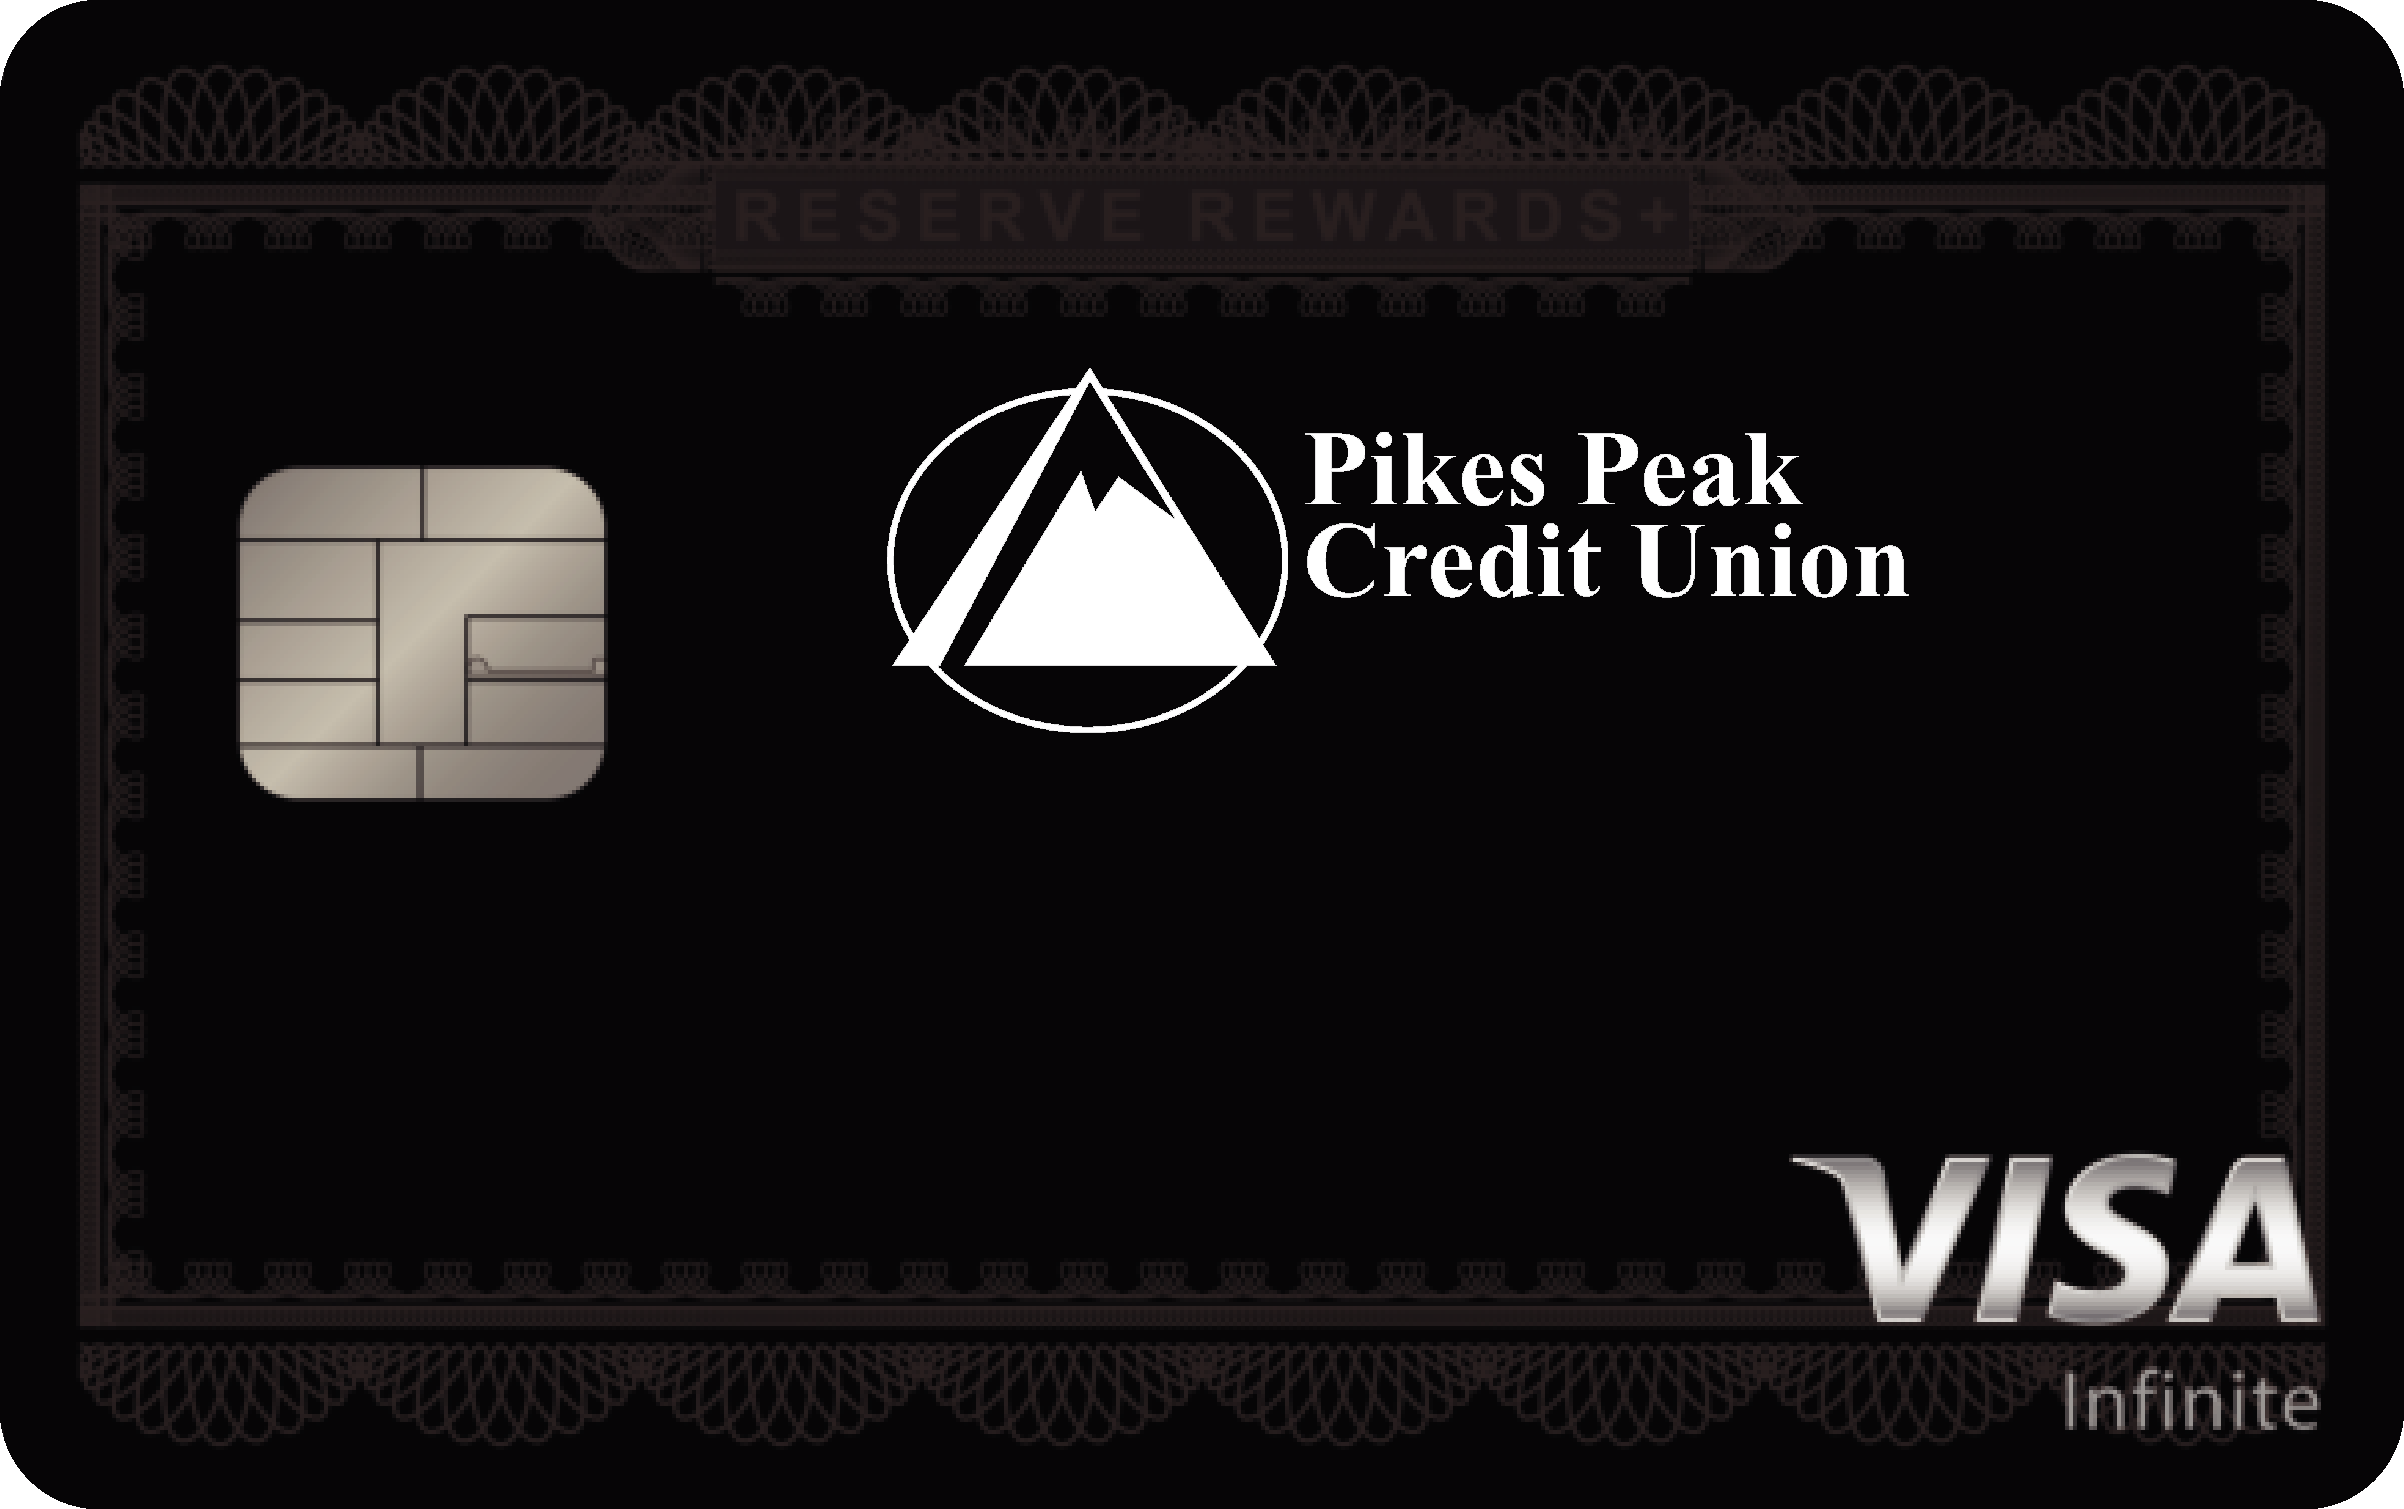 Pikes Peak Credit Union